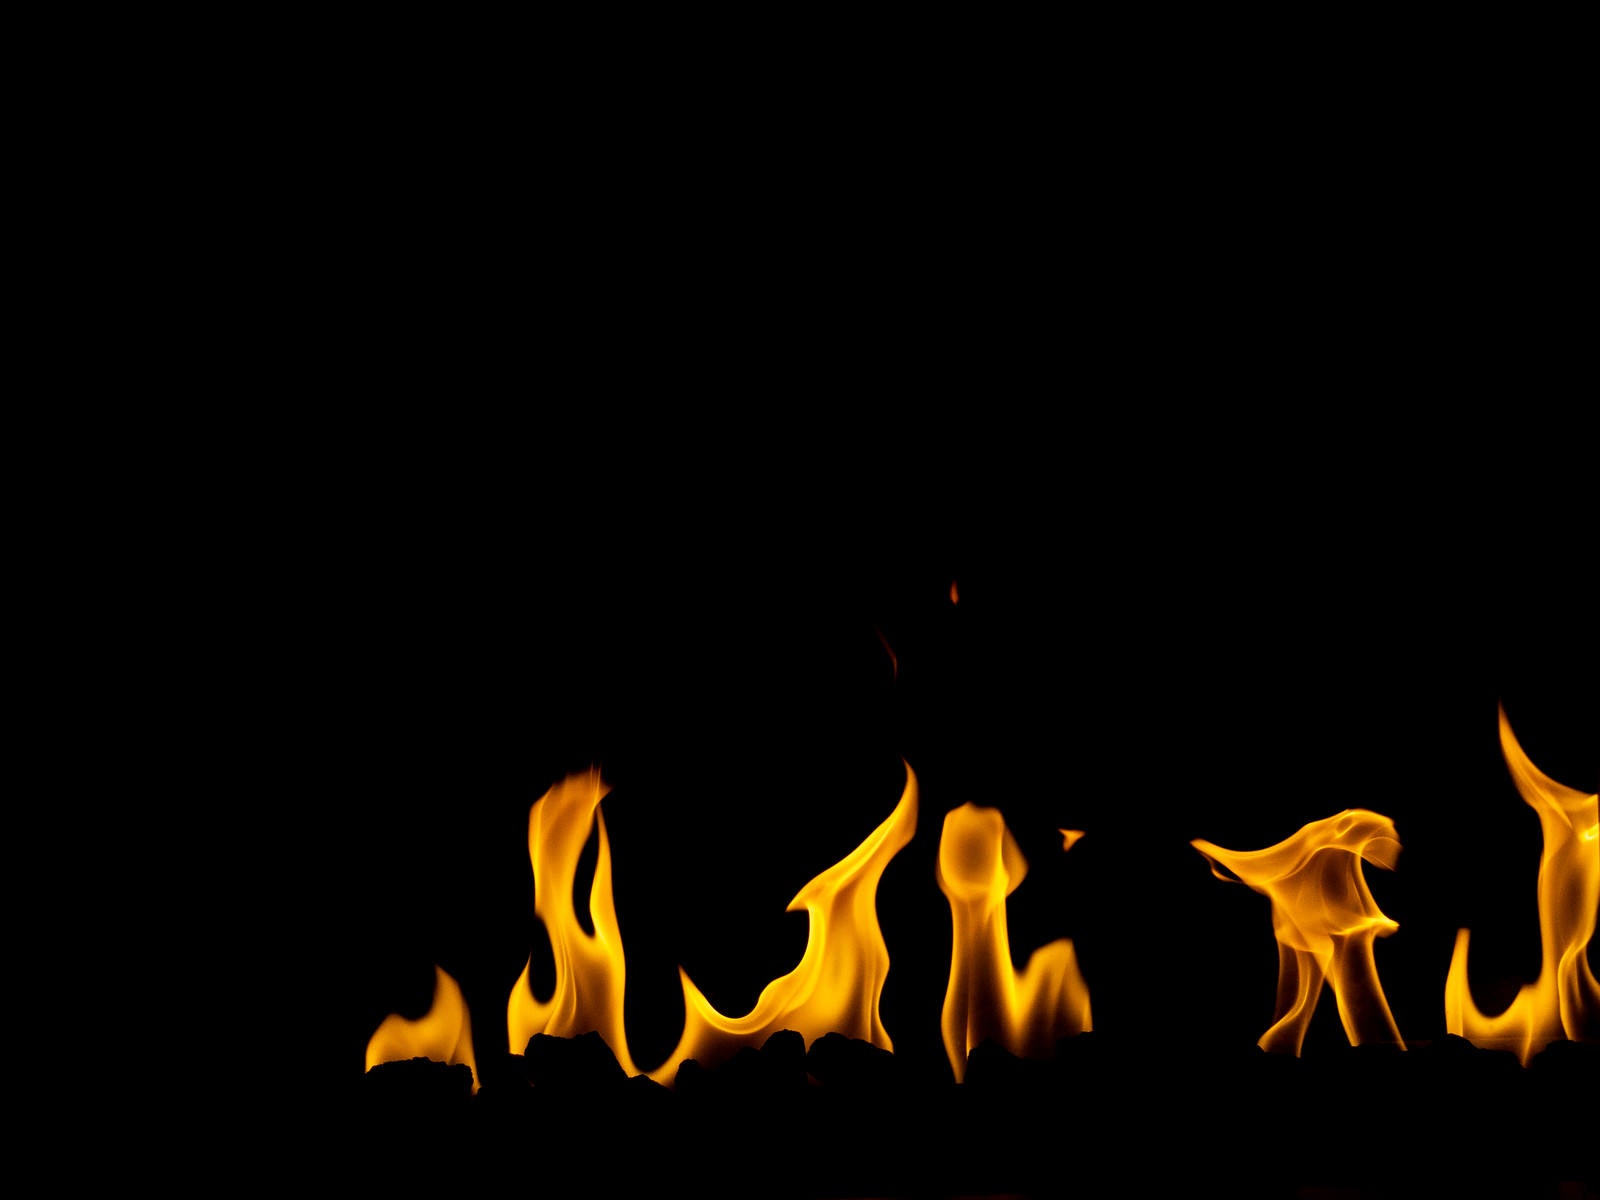 「下から炎が出る様子」の写真